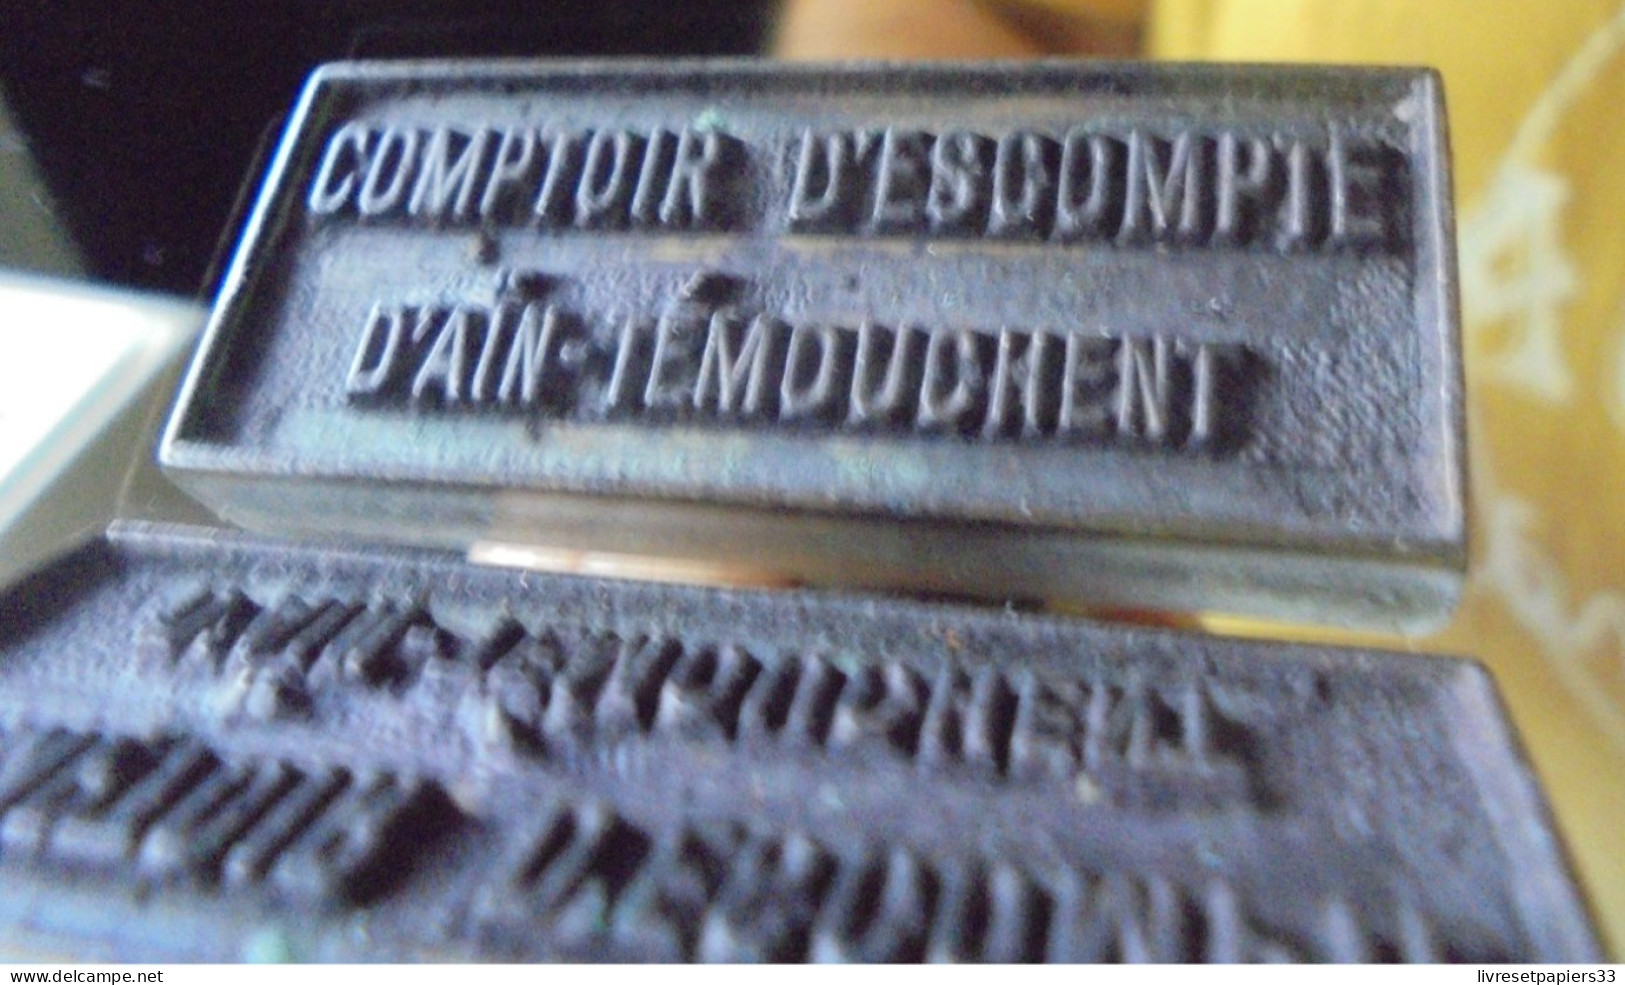 Ancien Tampon COMPTOIR D'ESCOMPTE D'AIN TEMOUCHENT Algérie Banque - Seals